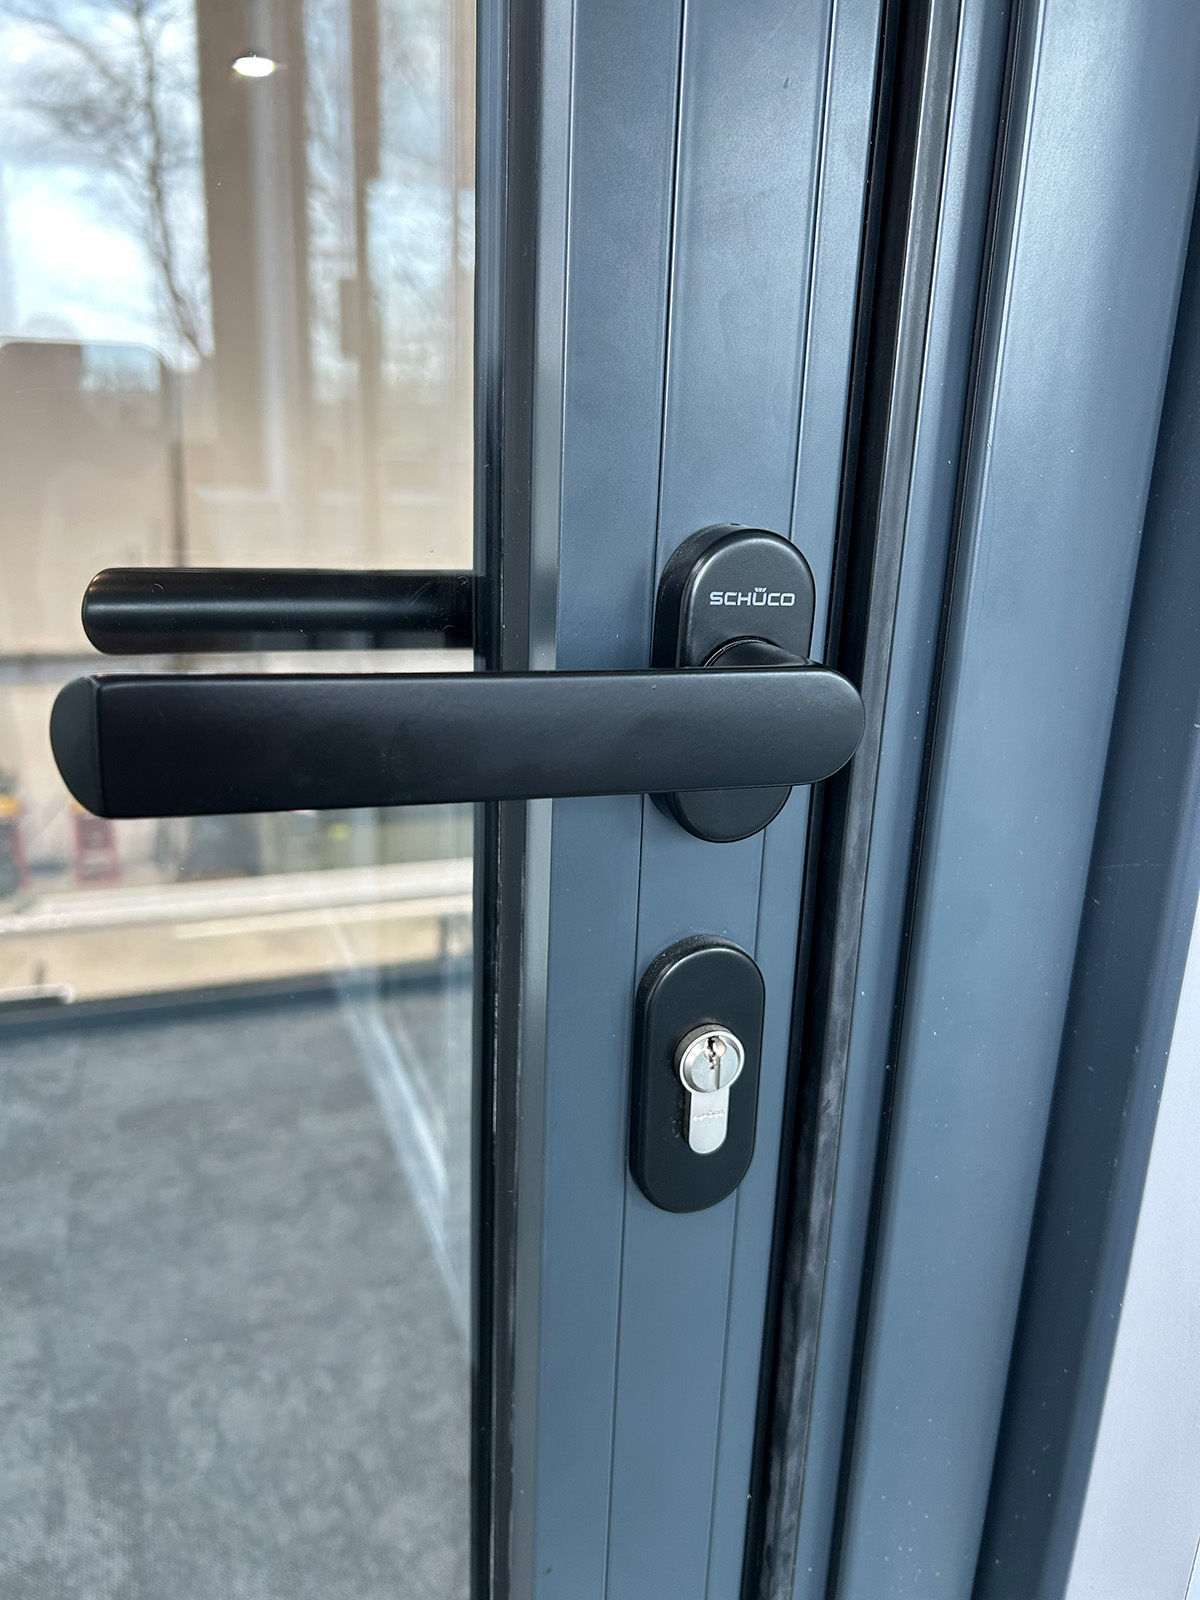 Secure bifold door handle